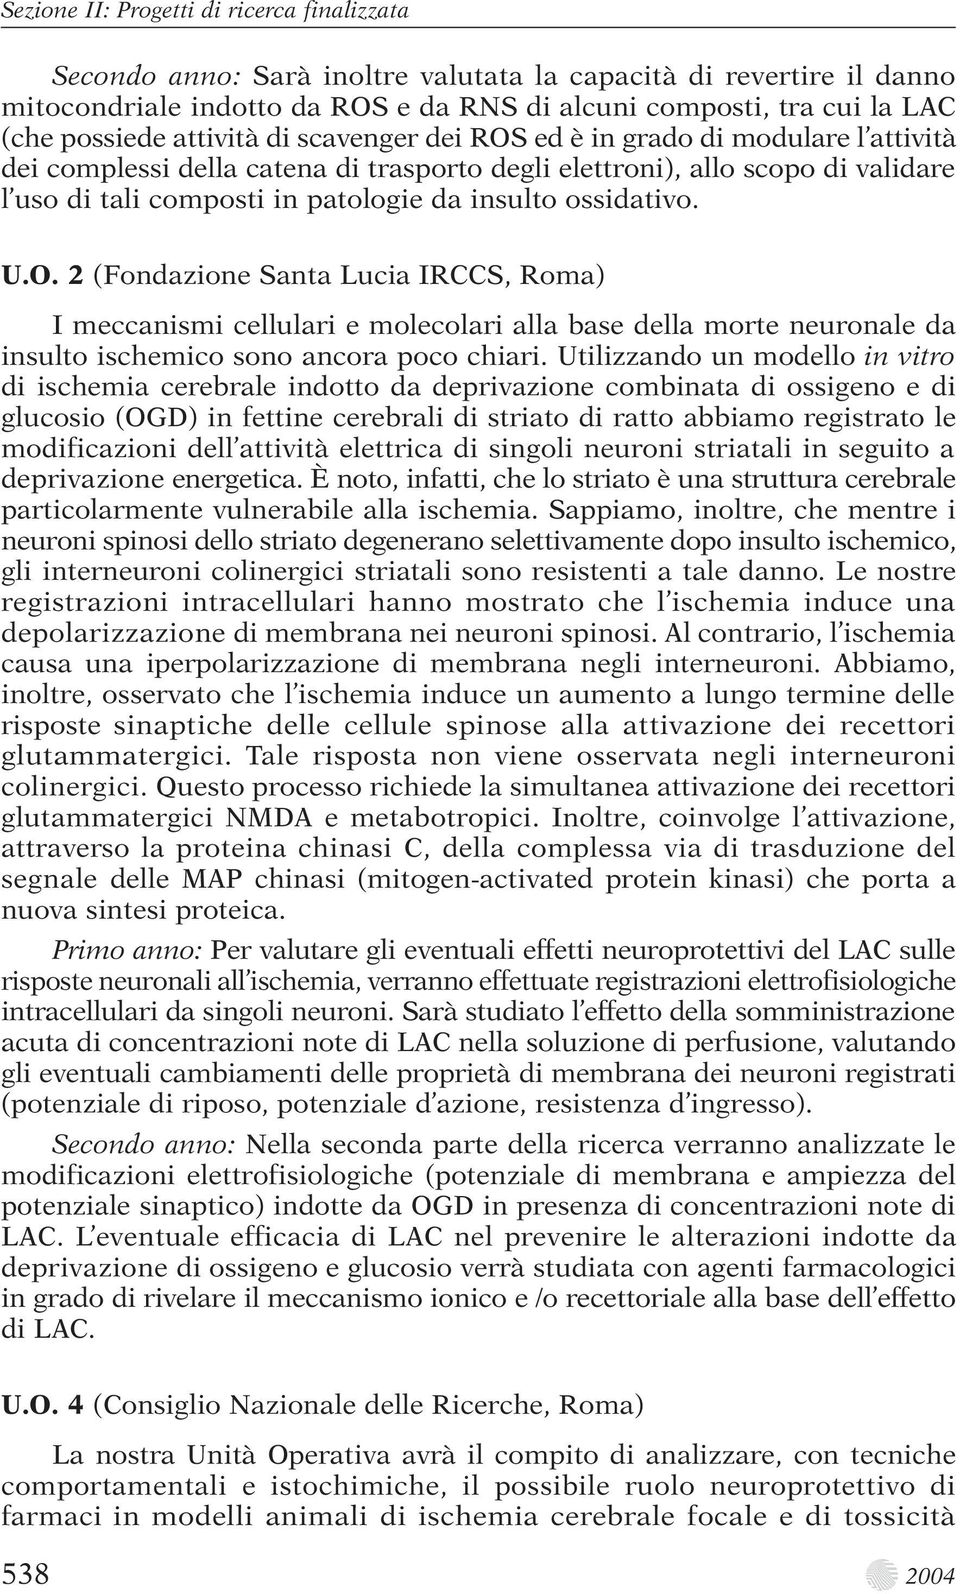 insulto ossidativo. U.O. 2 (Fondazione Santa Lucia IRCCS, Roma) I meccanismi cellulari e molecolari alla base della morte neuronale da insulto ischemico sono ancora poco chiari.